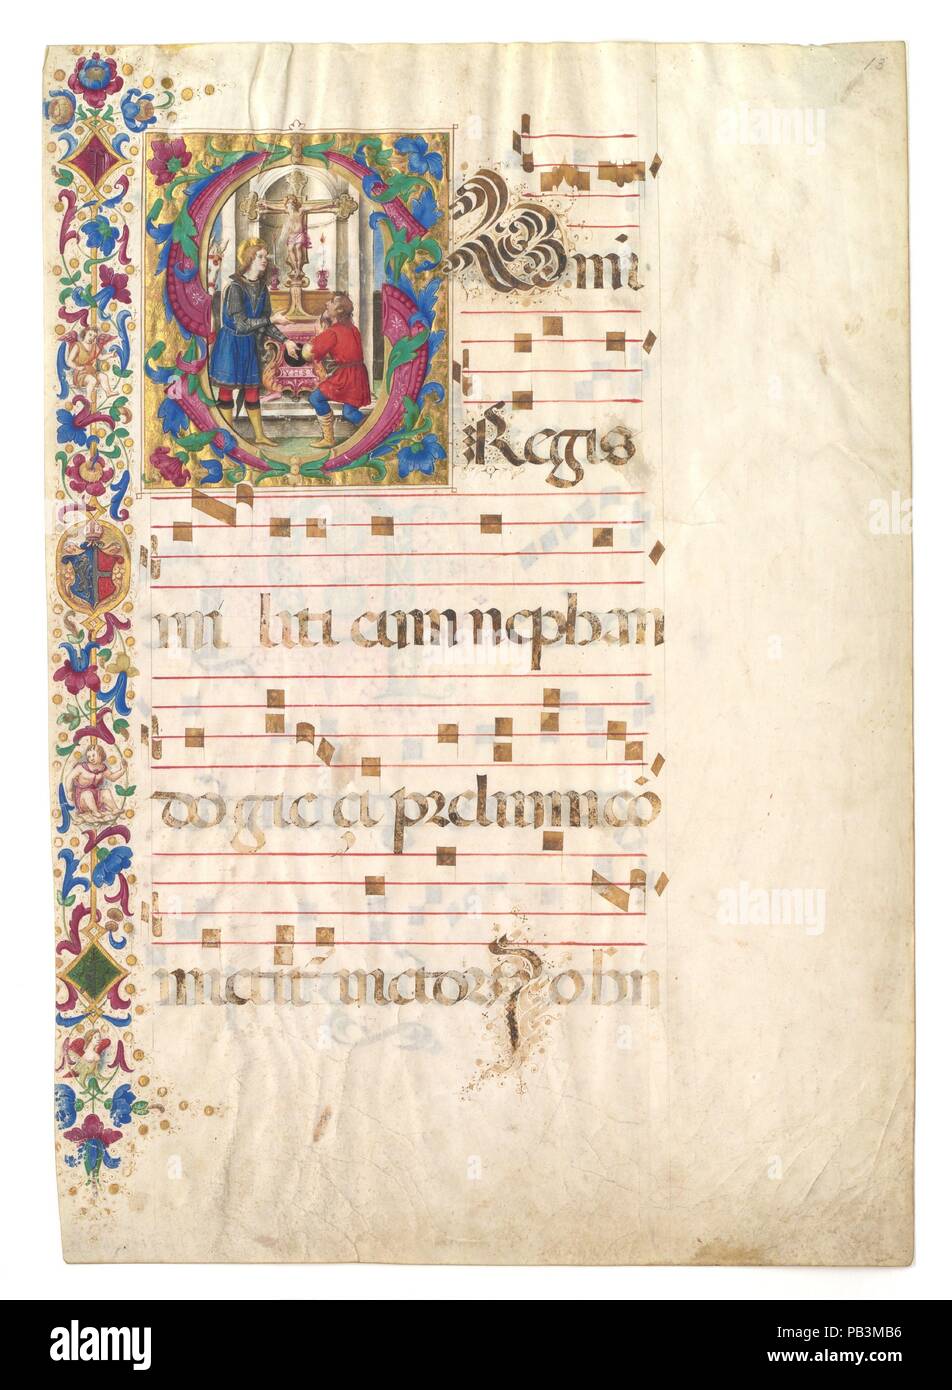 Feuille manuscrit avec saint Jean Gualbert dans une première S, d'un Antiphonary. Culture : l'italien. Dimensions : hors tout : 28 1/4 x 19 15/16 in. (71,7 x 50,6 cm) Eclairage : 8 1/8 x 6 15/16 in. (20,6 x 17,7 cm) discontinue ht : 2 1/16 in. (5,3 cm) portée : 2 interspace 1/16 in. (5,2 cm) taille : 37 x 28 1/8 in. (94 x 71,5 cm) Mat Fenêtre : 26 3/4 x 16 15/16 in. (68 x 43,1 cm). Date : début du 16ème siècle. Musée : Metropolitan Museum of Art, New York, USA. Banque D'Images